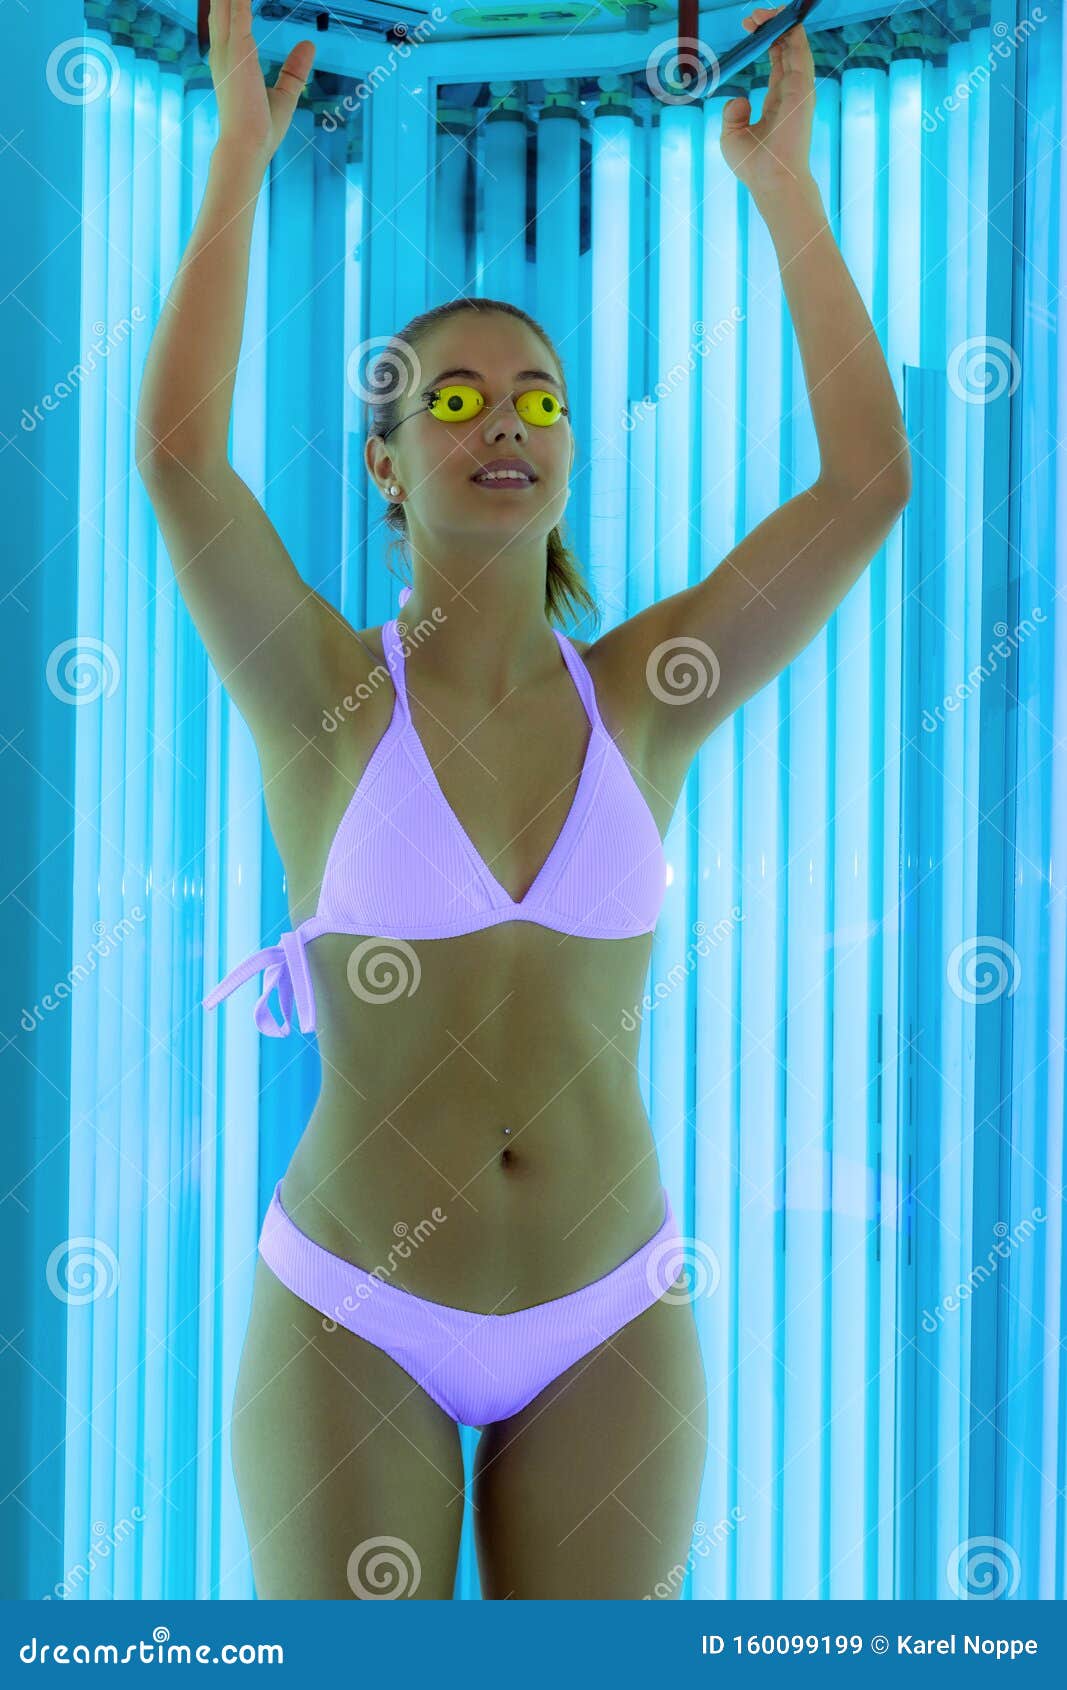 2005 bikini collage girl free hd photo